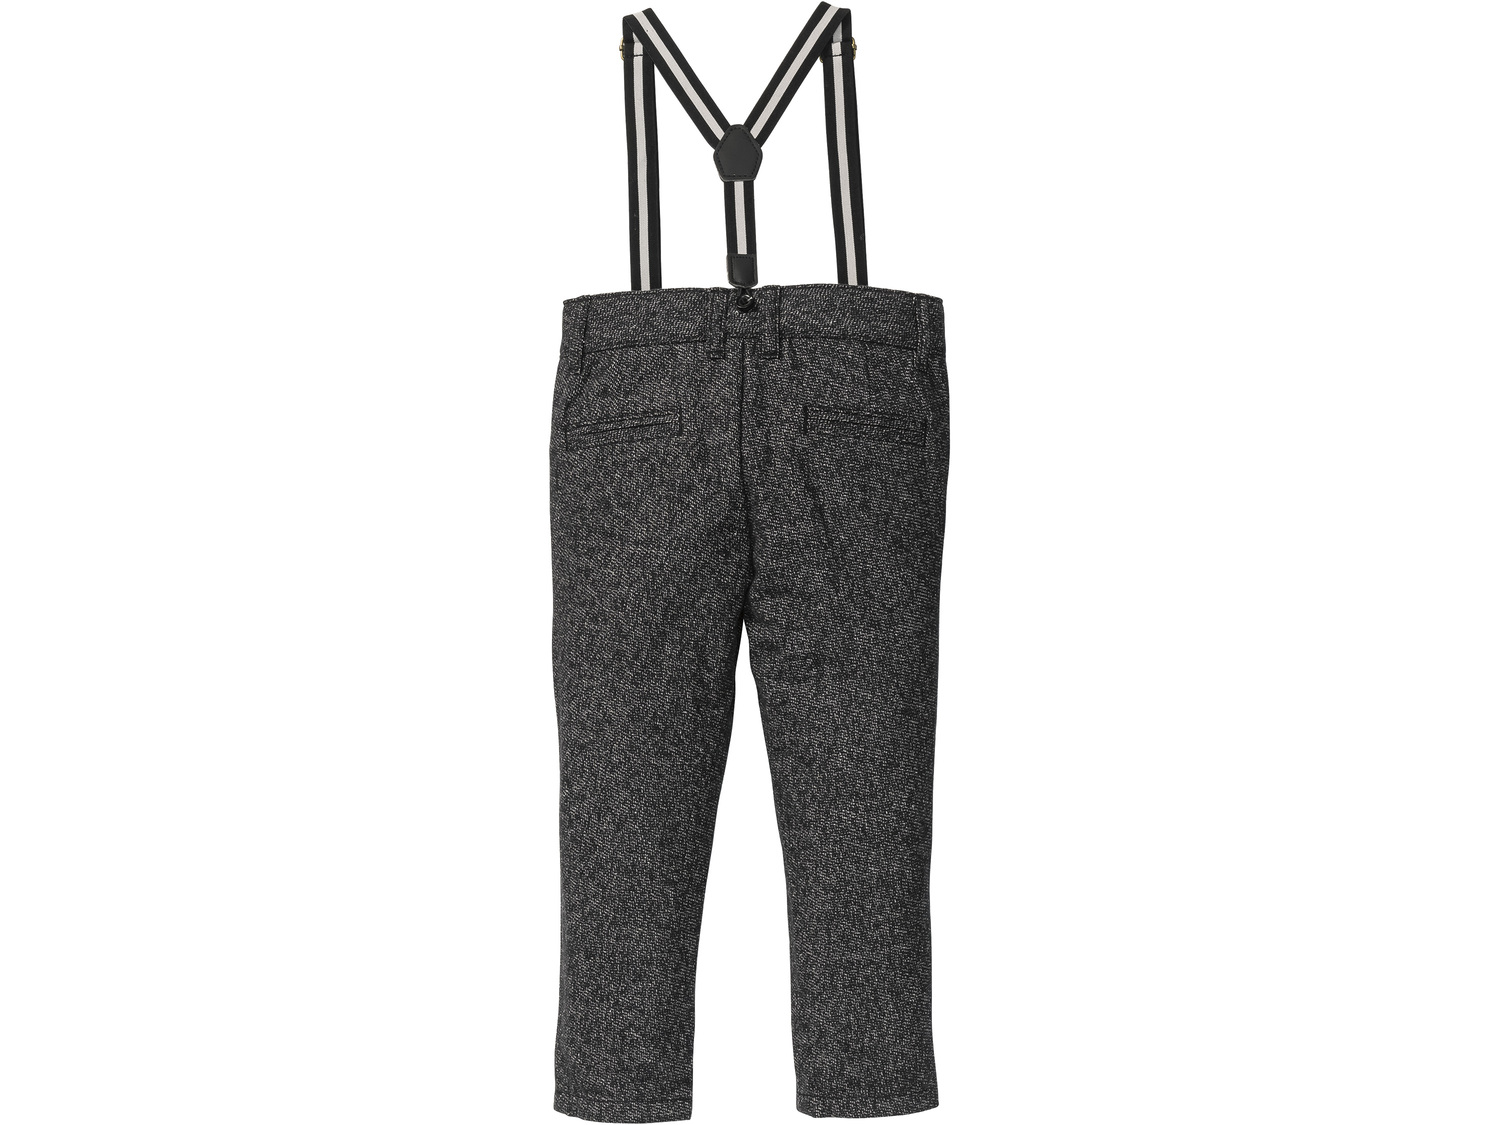 Spodnie z szelkami Lupilu, cena 29,99 PLN 
- rozmiary: 92-116
- spodnie 100% bawełny
- ...